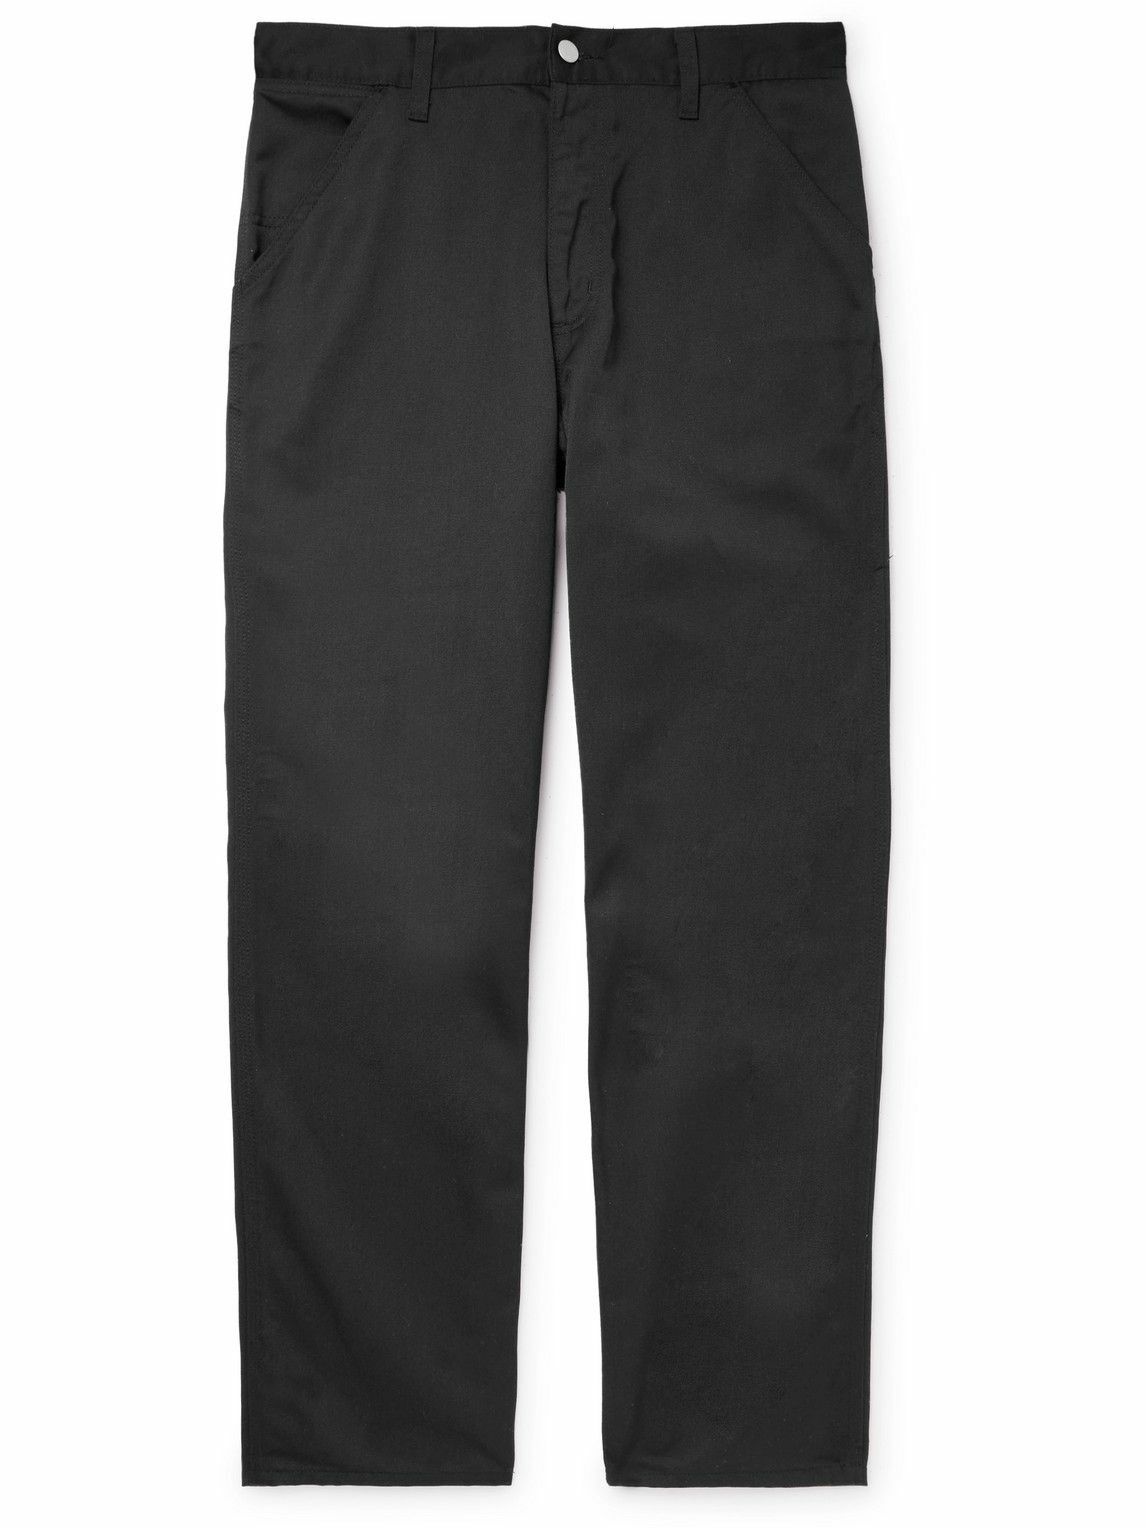 Carhartt WIP - Straight-Leg Twill Trousers - Black Carhartt WIP